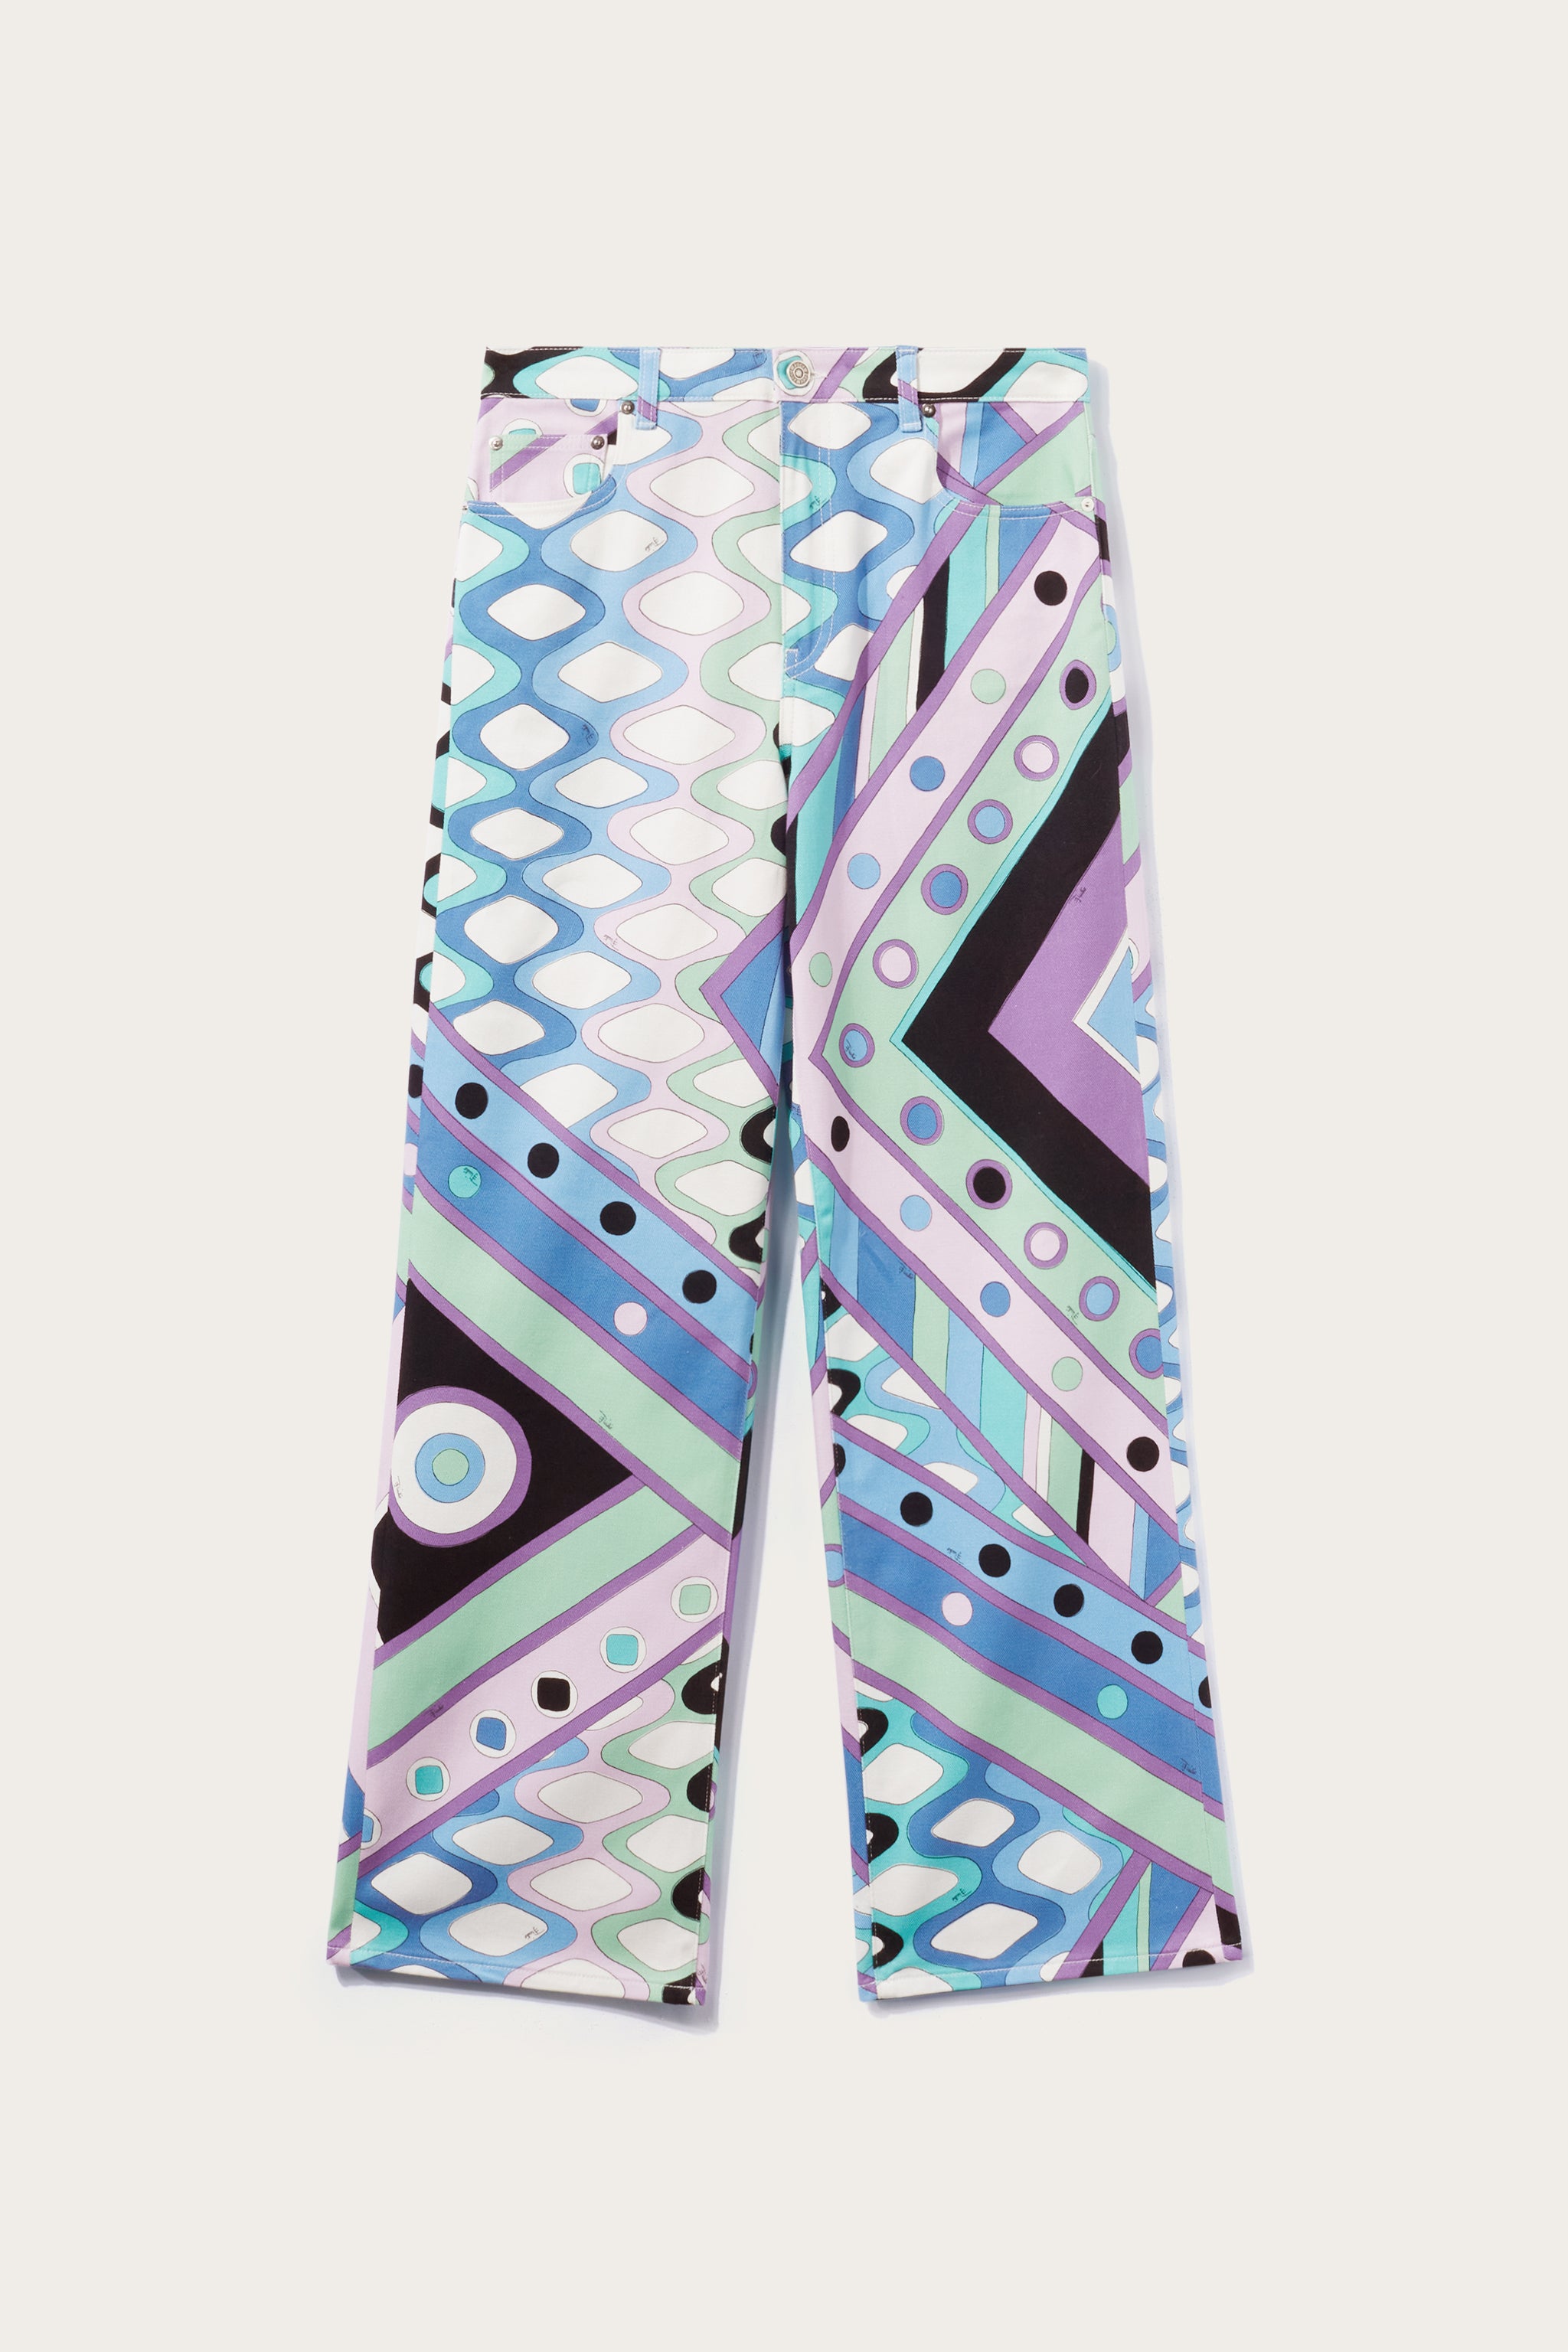 Pucci printed and solid shorts & pants | Pucci